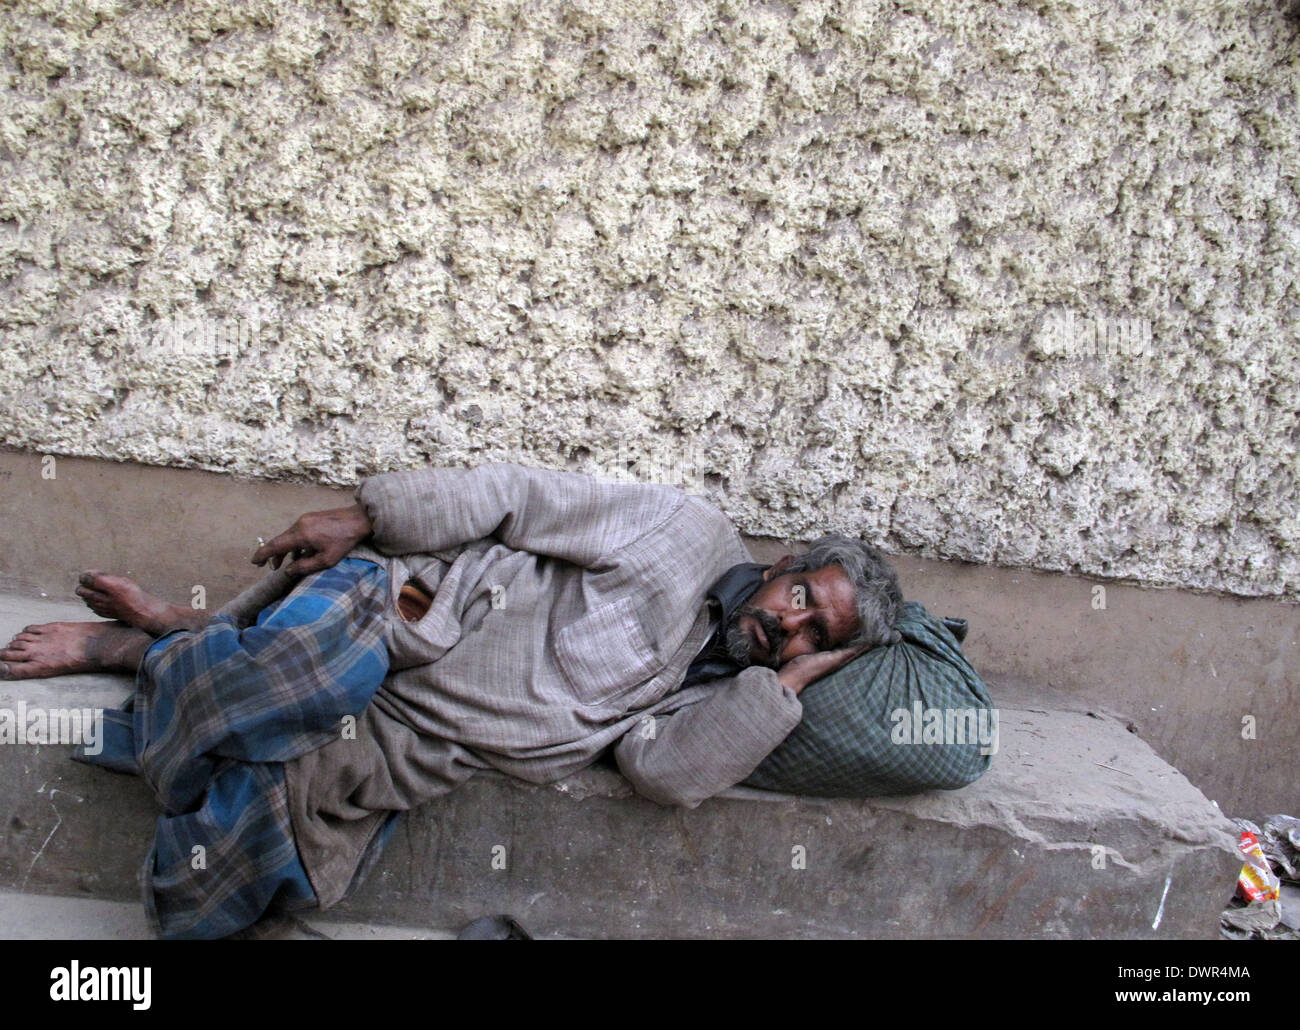 Rues de Kolkata, homme dormant dans les rues de Kolkata, Inde, le 03 février 2009. Banque D'Images